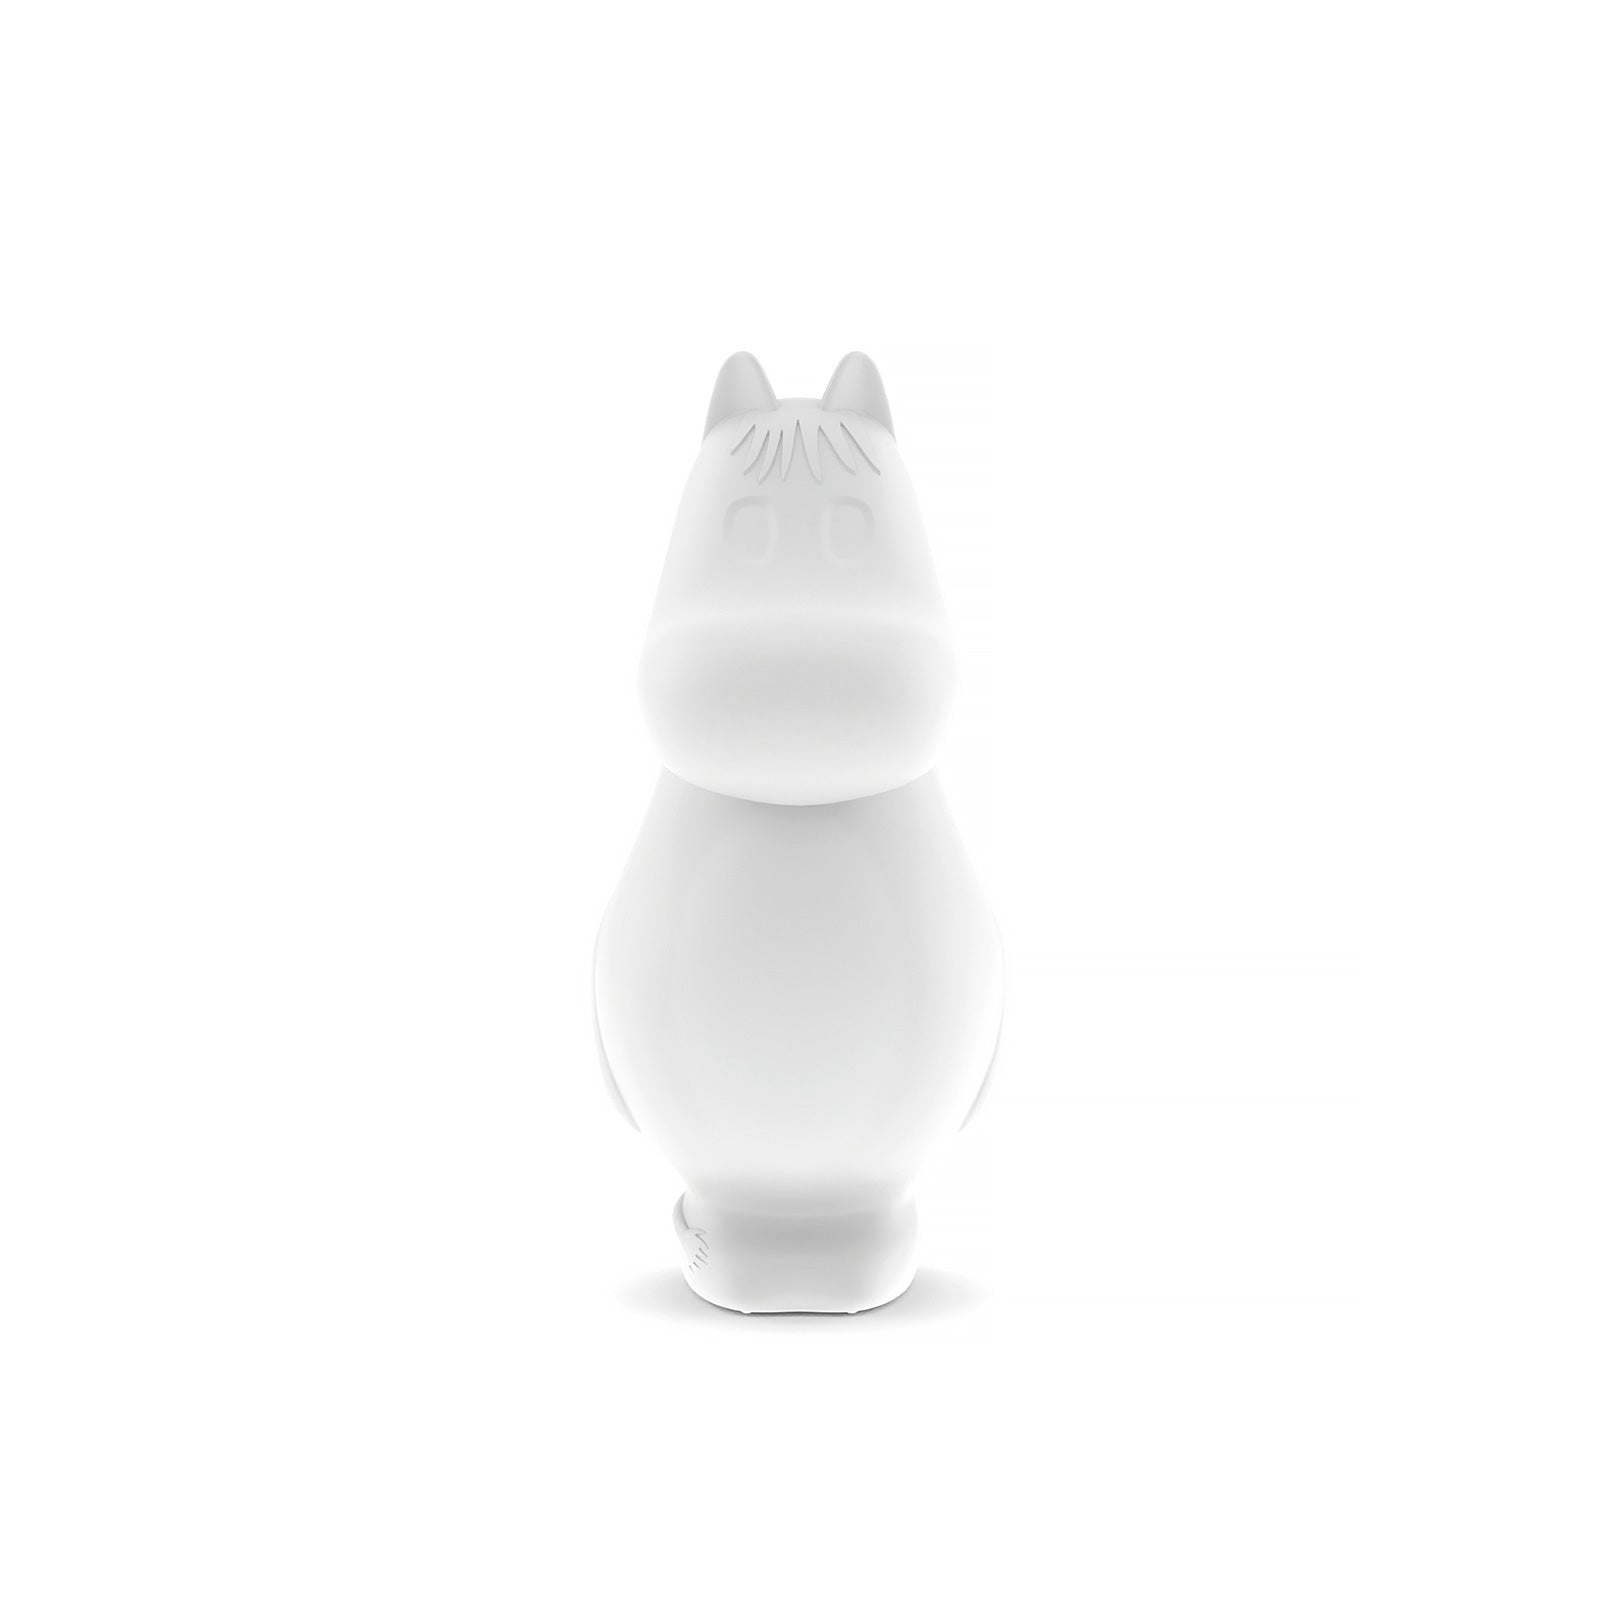 Moomin Light - Niiskuneiti S - Snorkmaiden table lamp